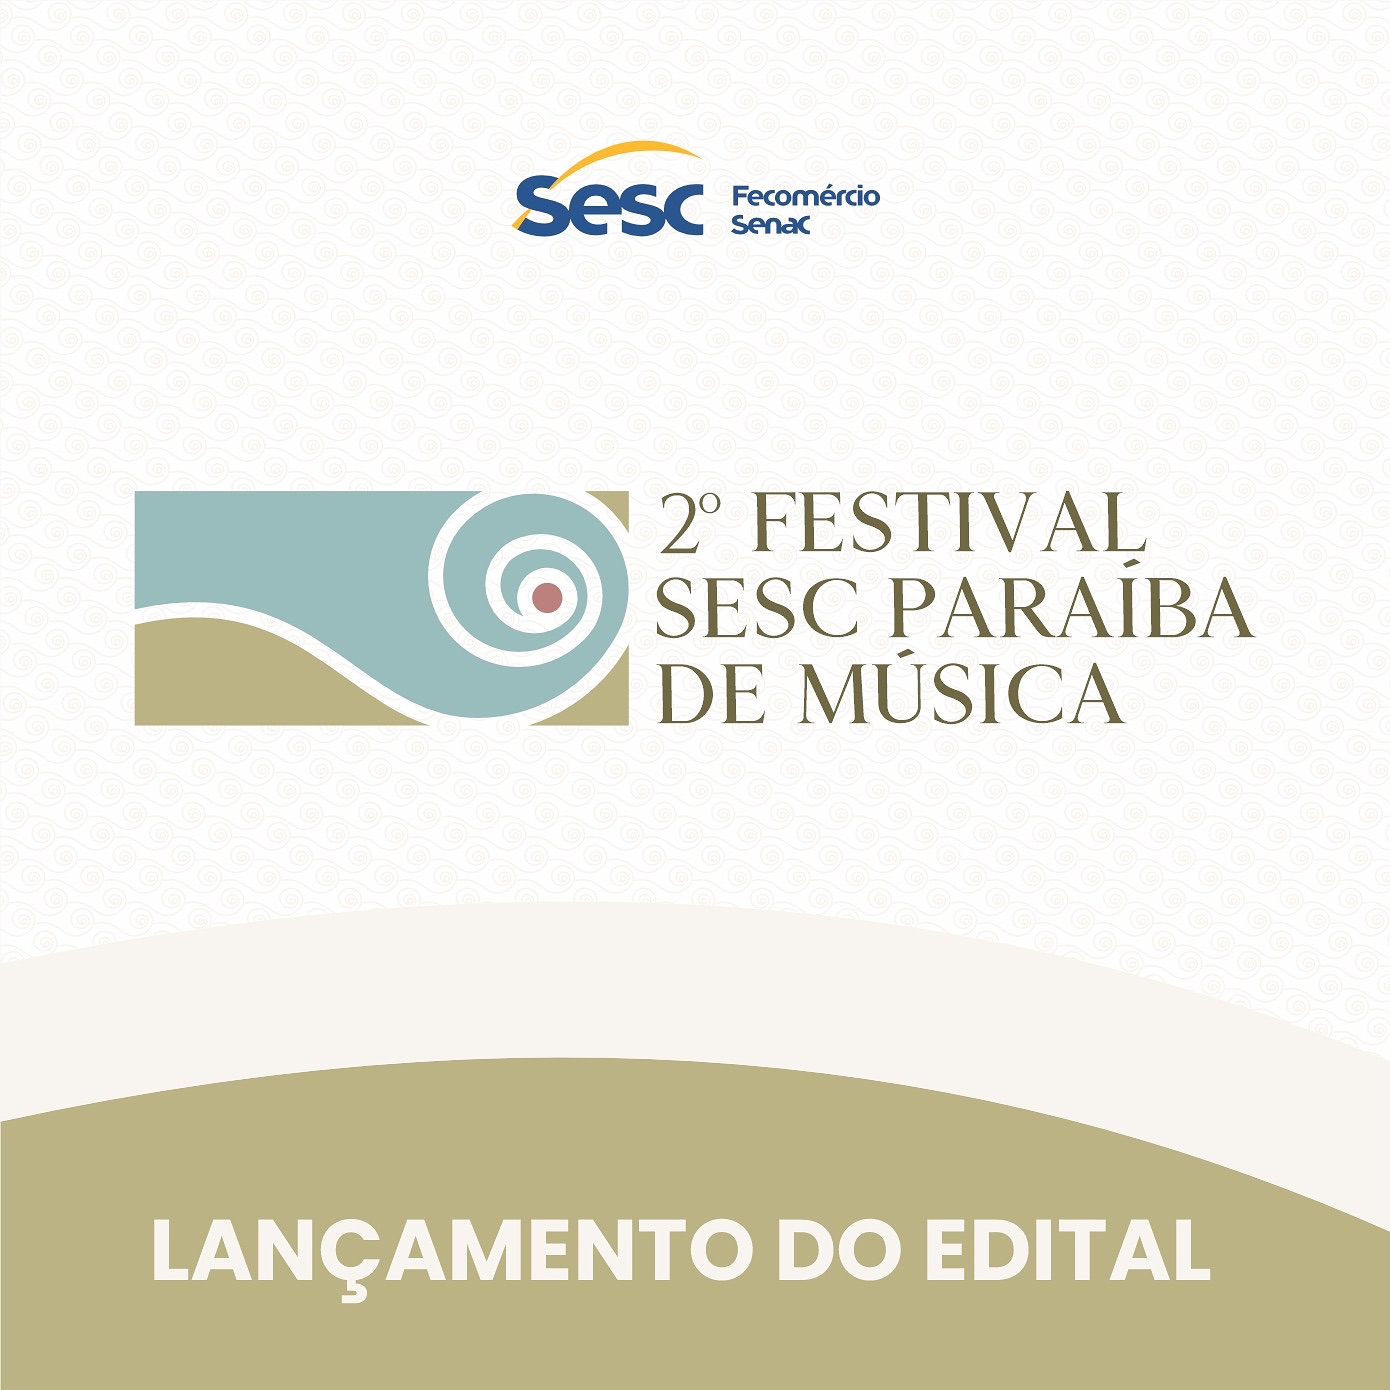 Sesc Paraíba lança edital para a segunda edição do Festival Sesc Paraíba de Música que ocorrerá em Areia